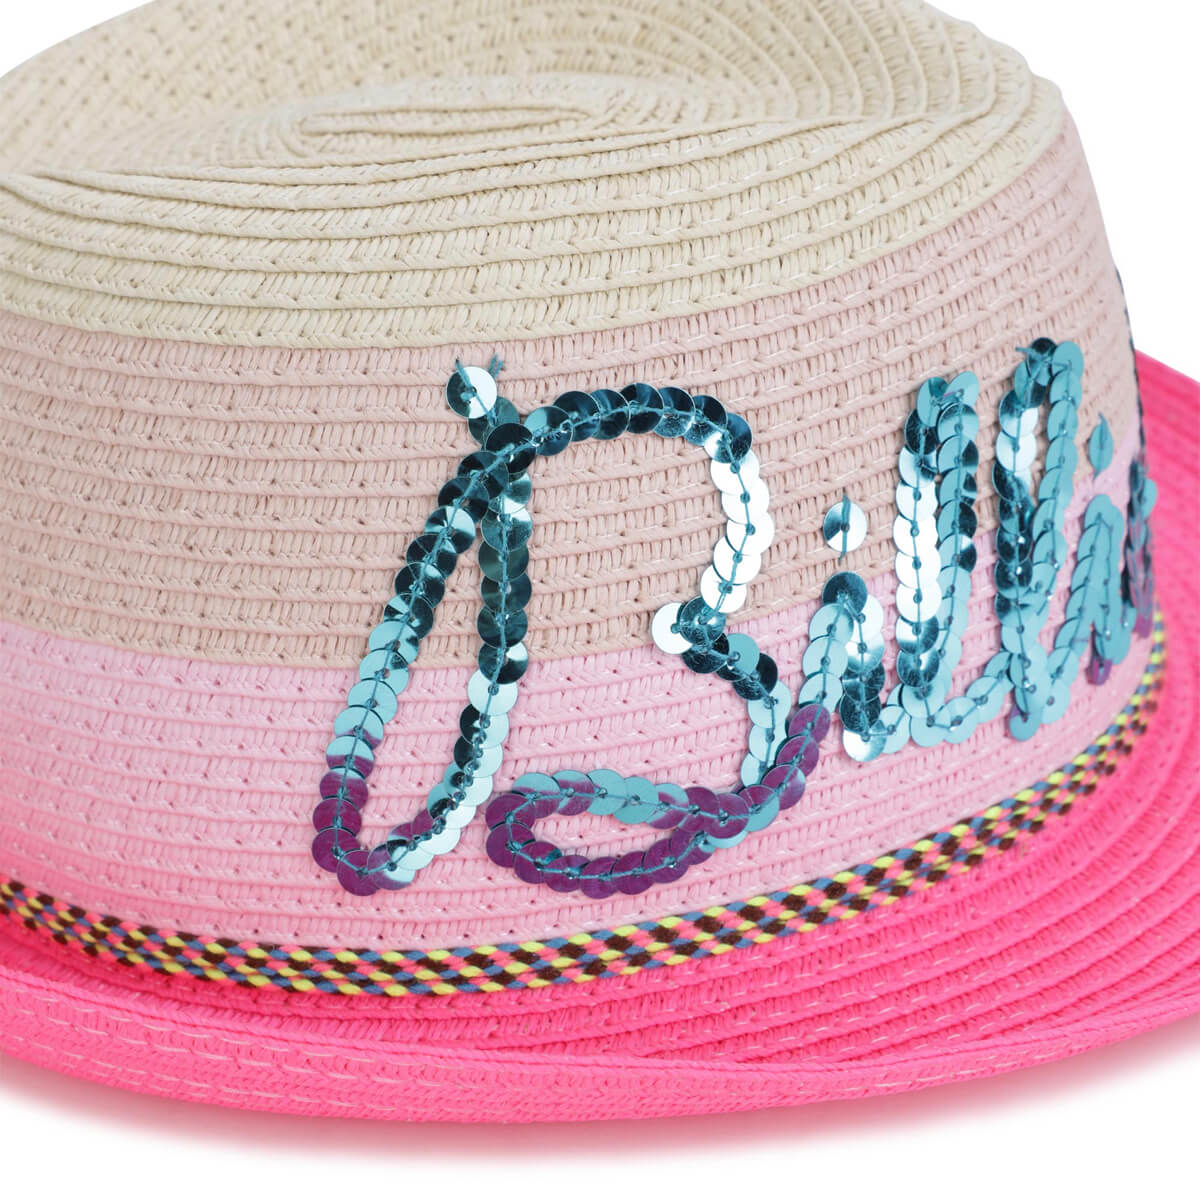 Billieblush Girls Pink Hat